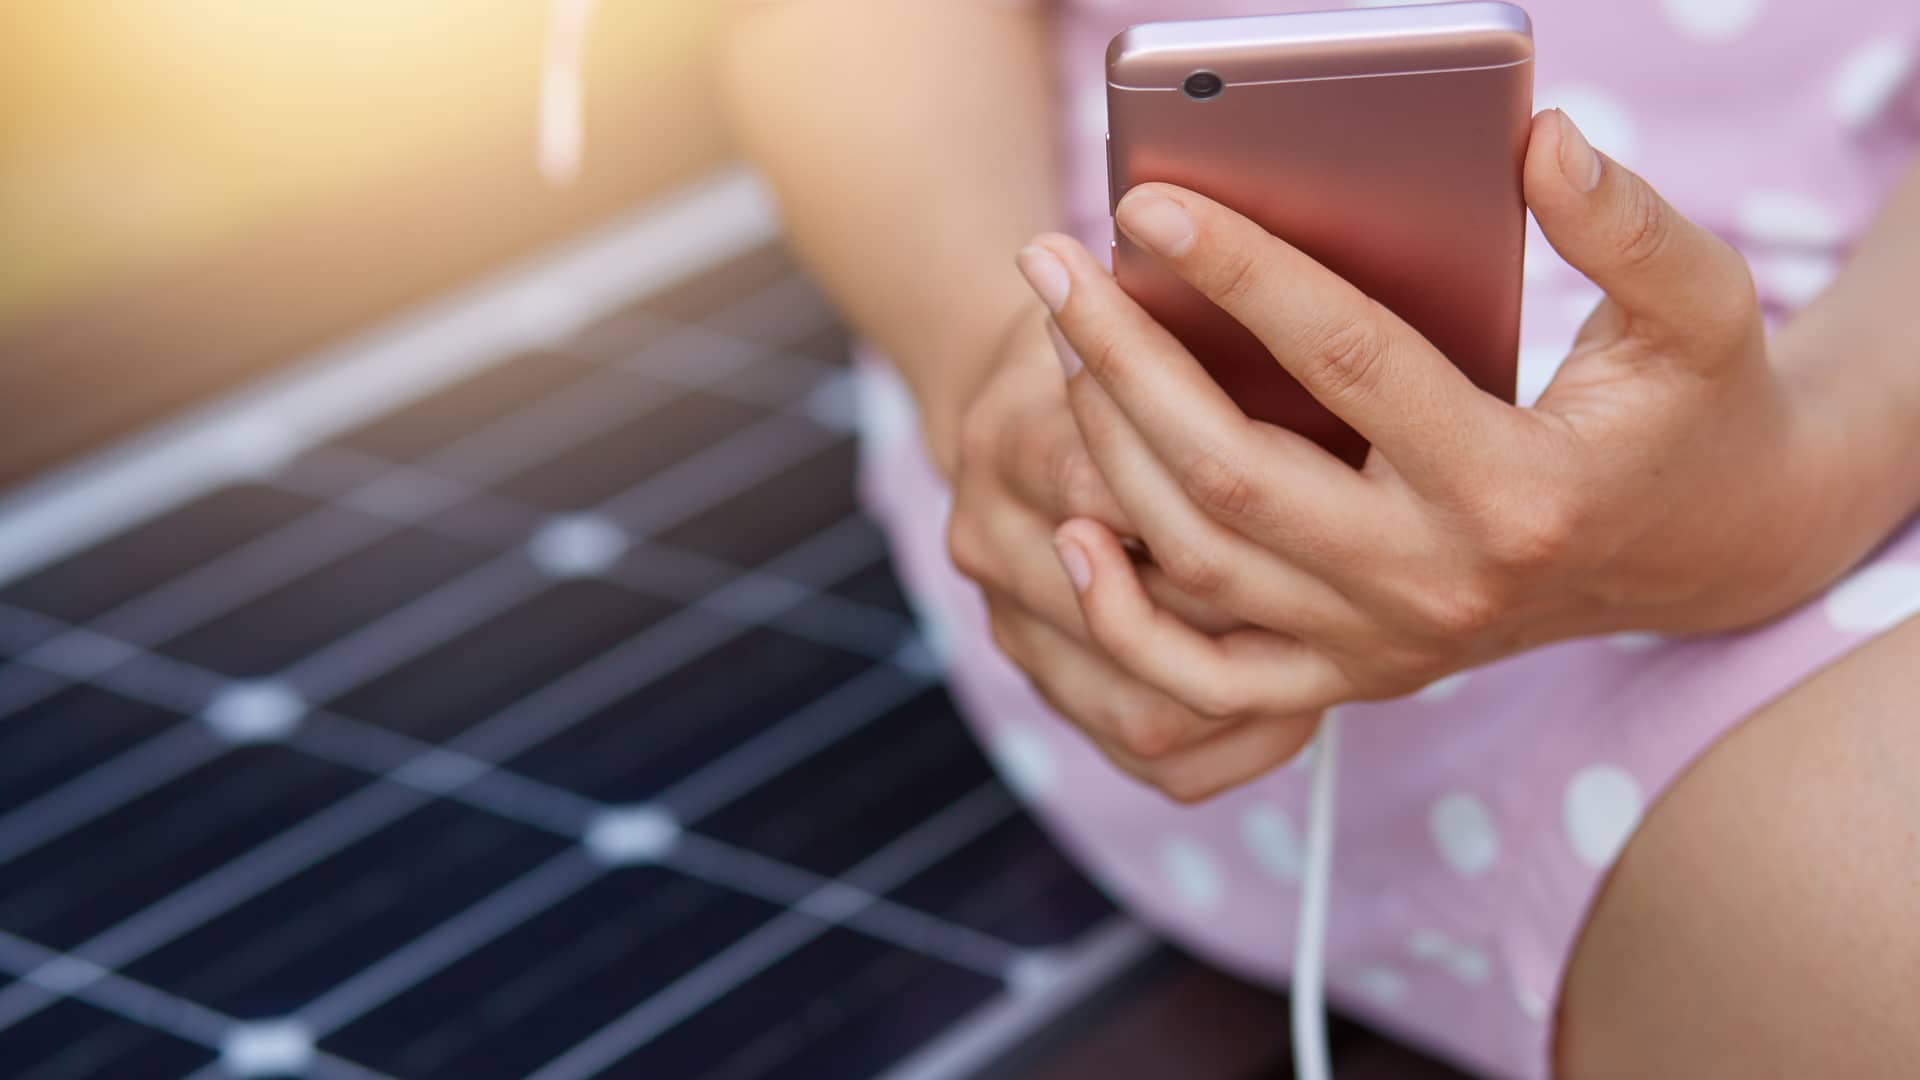 Mujer cargando su smartphone gracias a una placa solar, a continuación detallaremos otros usos de la energía solar renovable